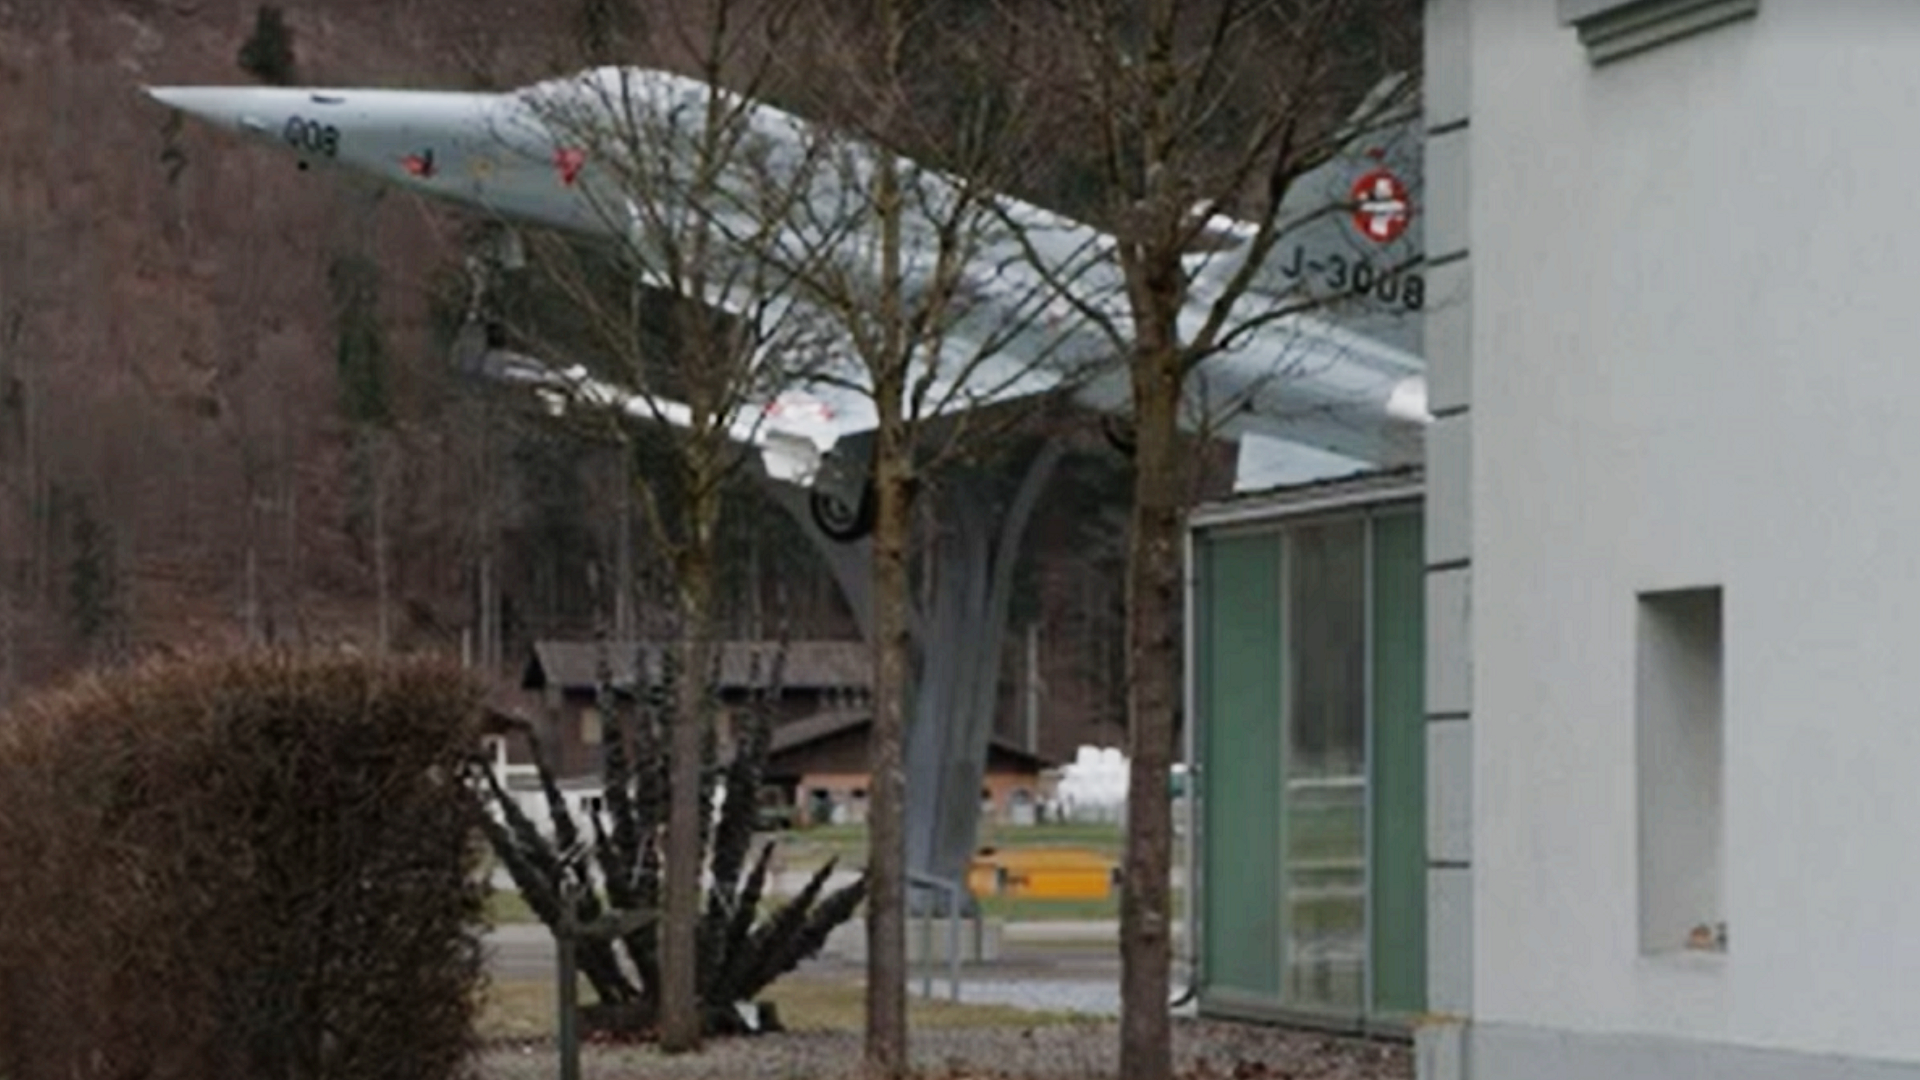 Ein Kampfjet, der in der Nähe des Gasthofs Rössli ausgestellt ist.